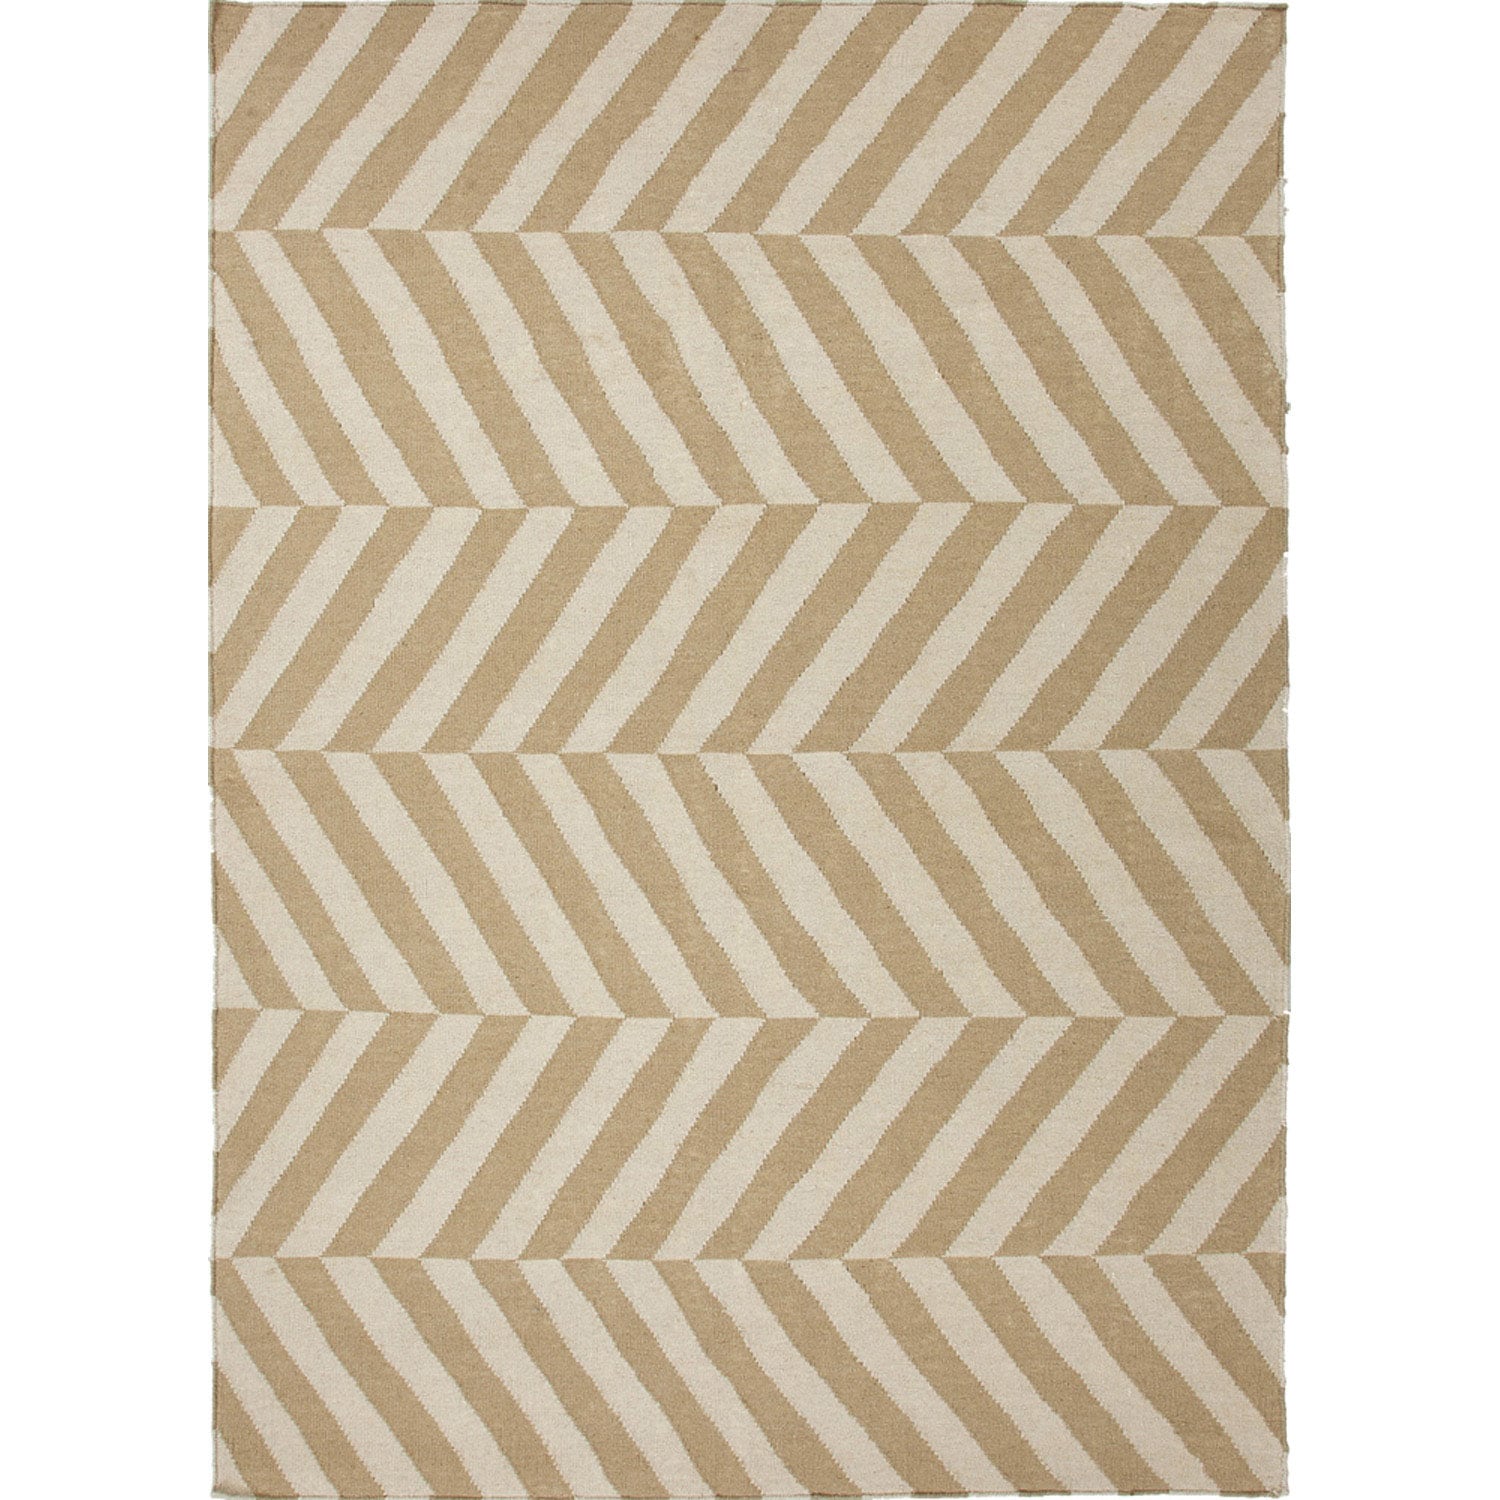 Handmade Flat Weave Stripe Pattern Brown Rug (9 X 12)